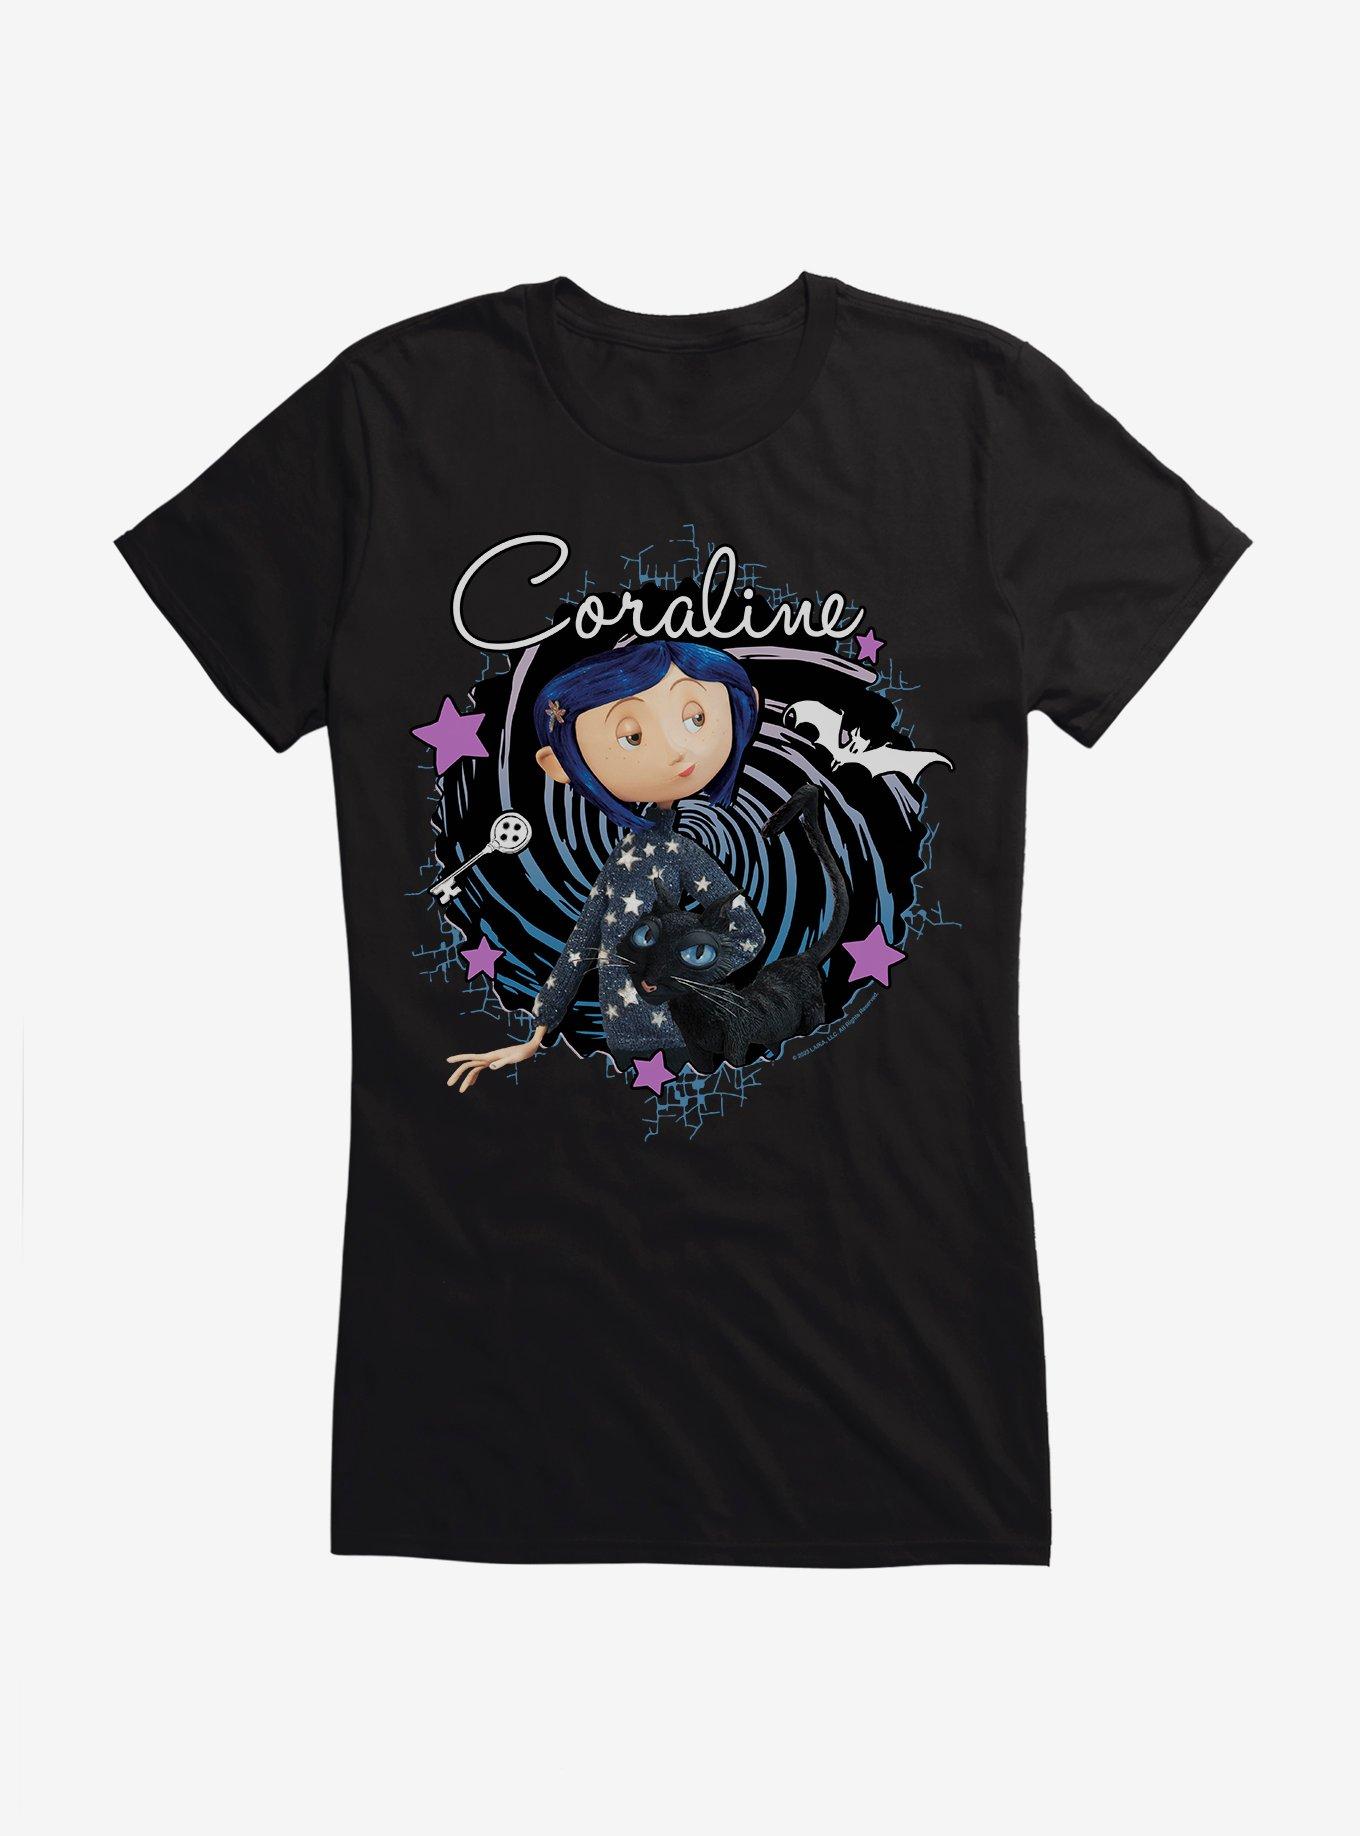 Coraline The Cat Swirl And Stars Girls T-Shirt